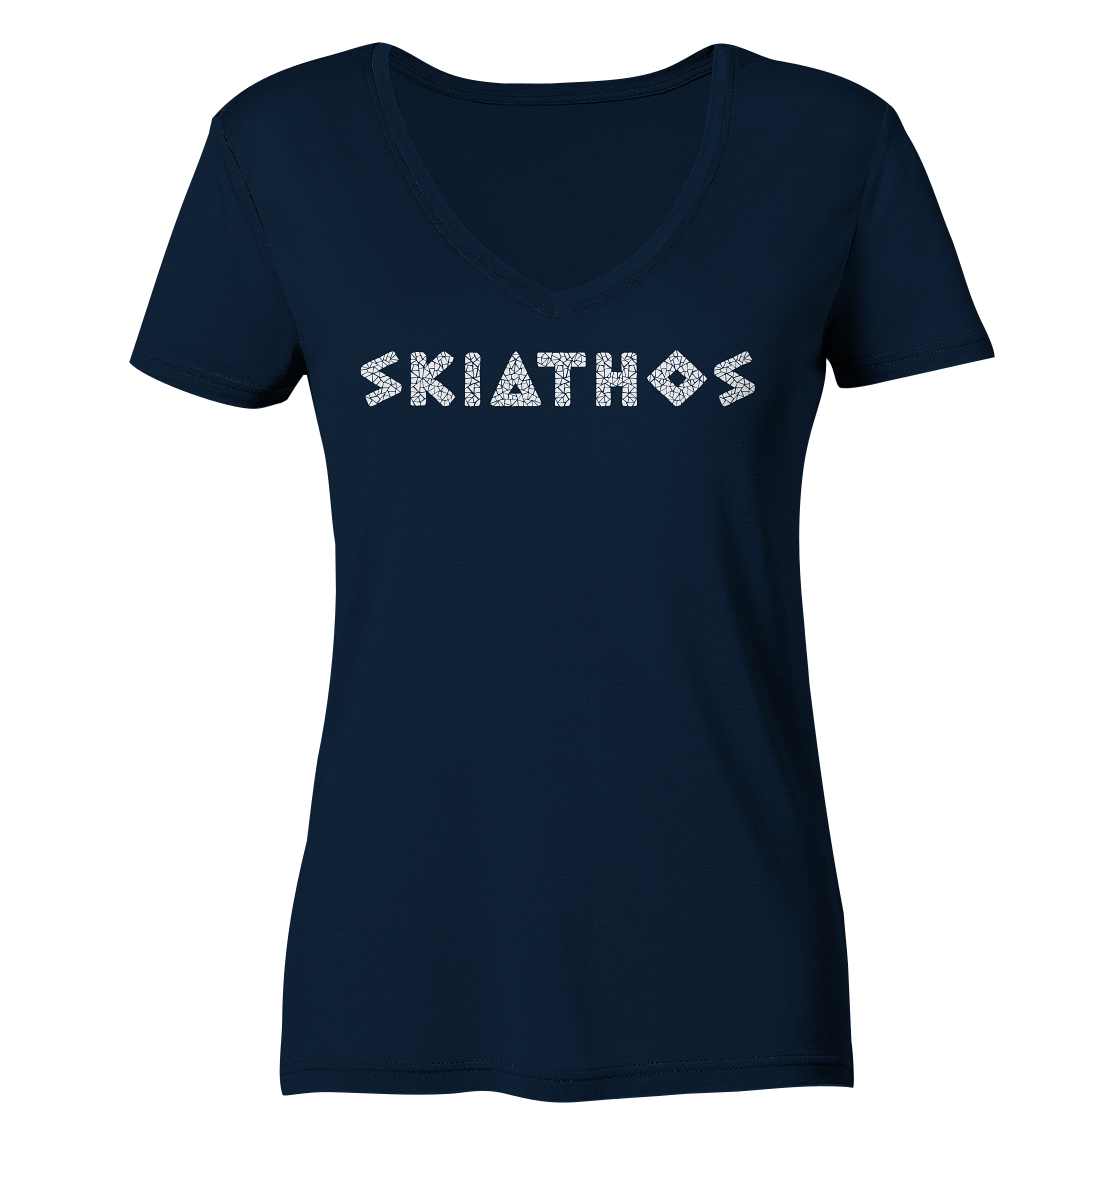 Skiathos Mosaic - Ladies Organic V-Neck Shirt